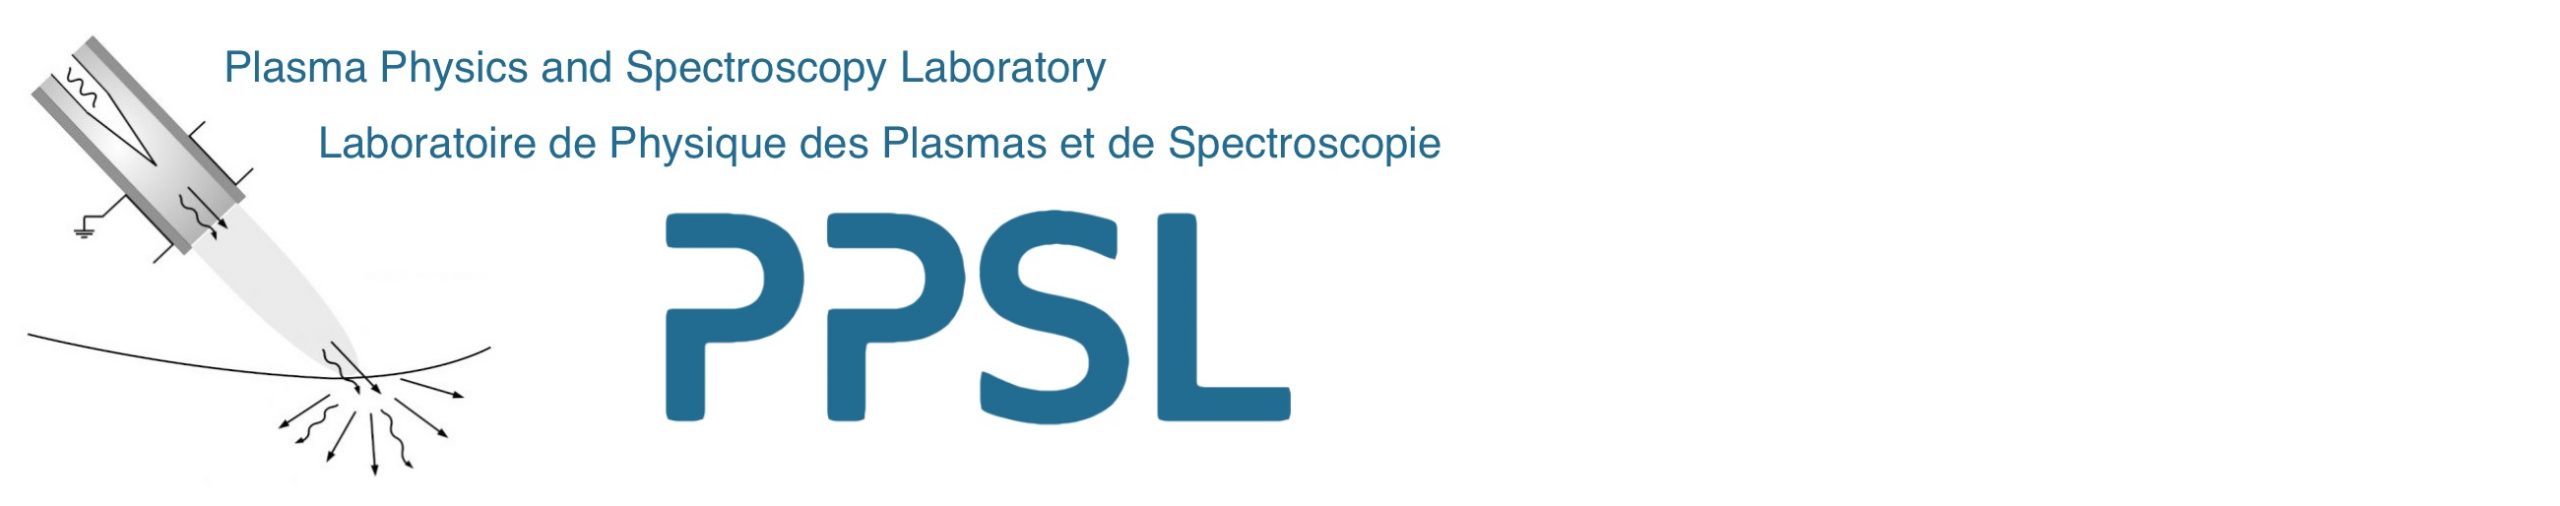 LogoPPSL